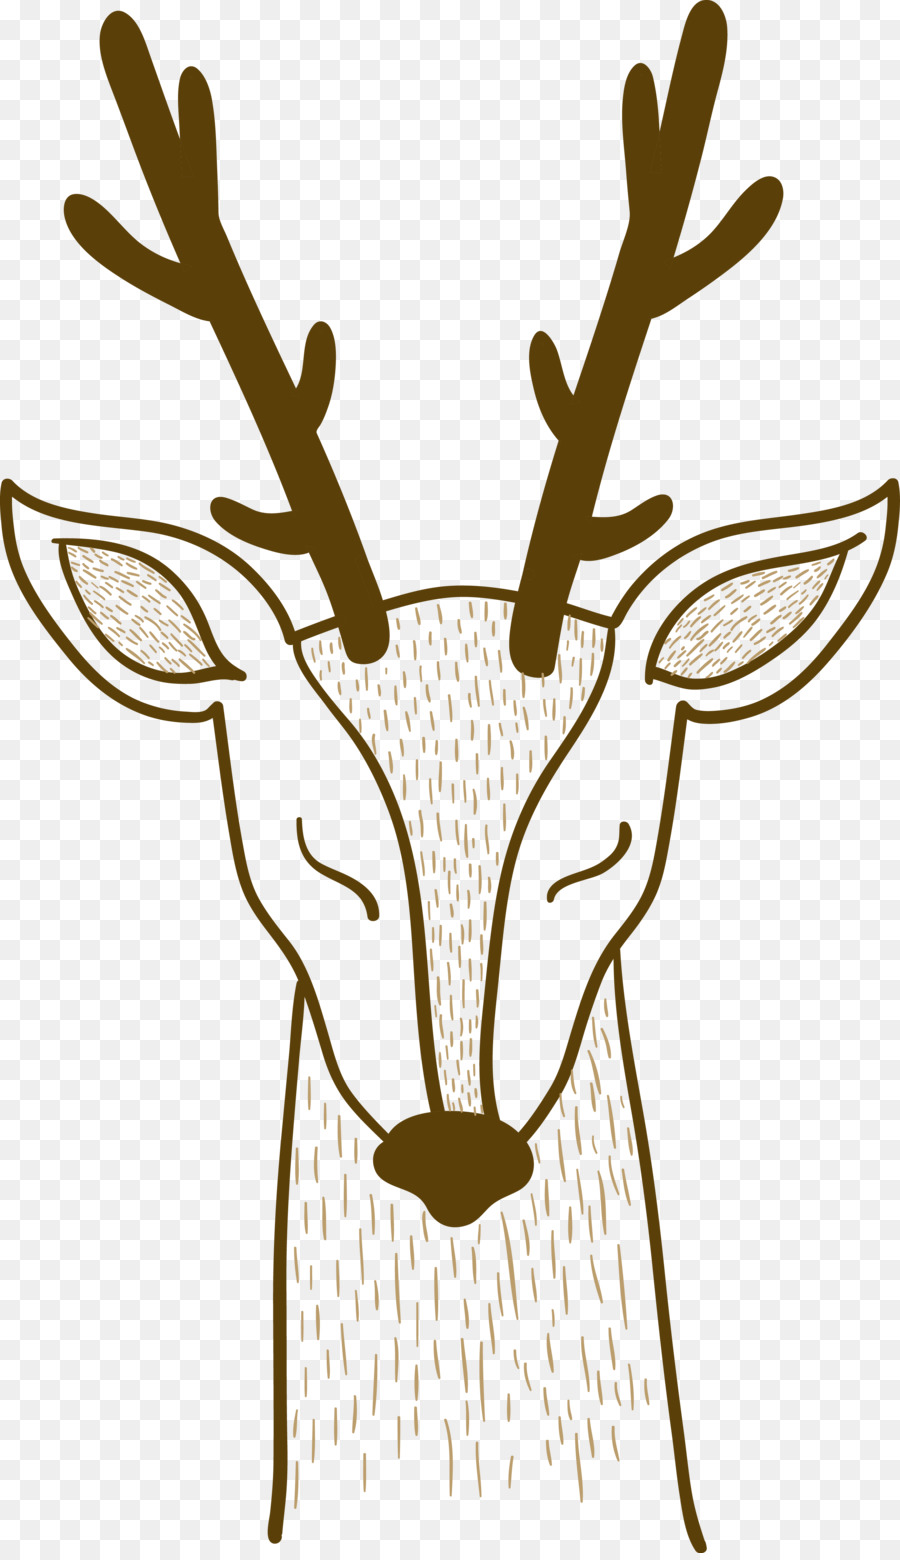 Pxe8re Davids deer Sika deer - Hand painted lines deer deer deer vector png download - 2851*4921 - Free Transparent Pxe8re Davids Deer png Download.